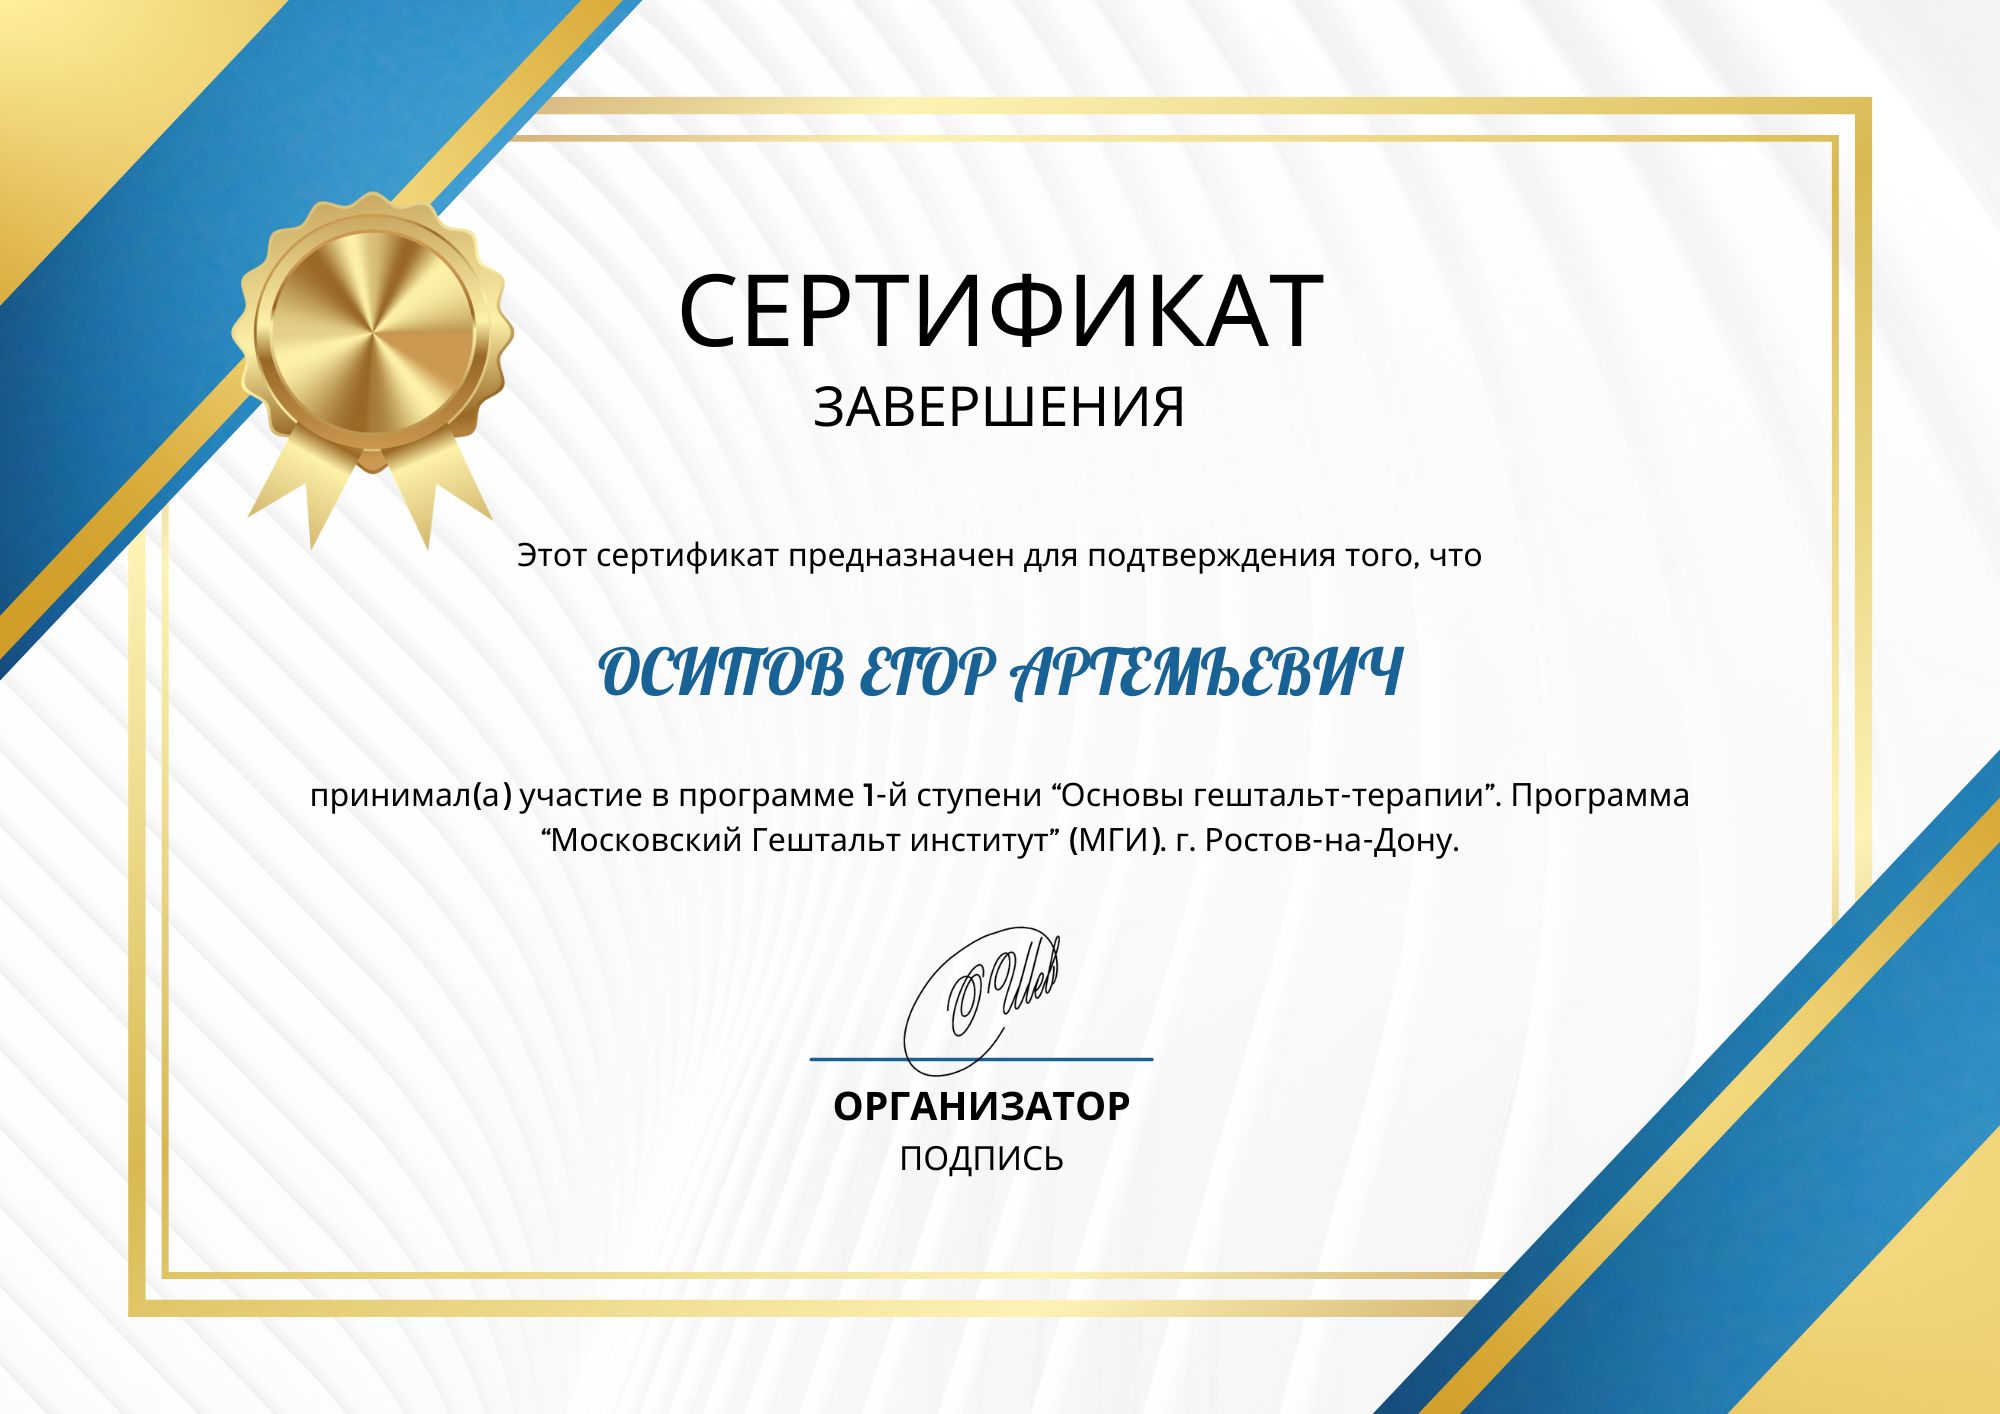 Фотография сертификата Осипова Егора Артемьевича за участие в программе первой ступени